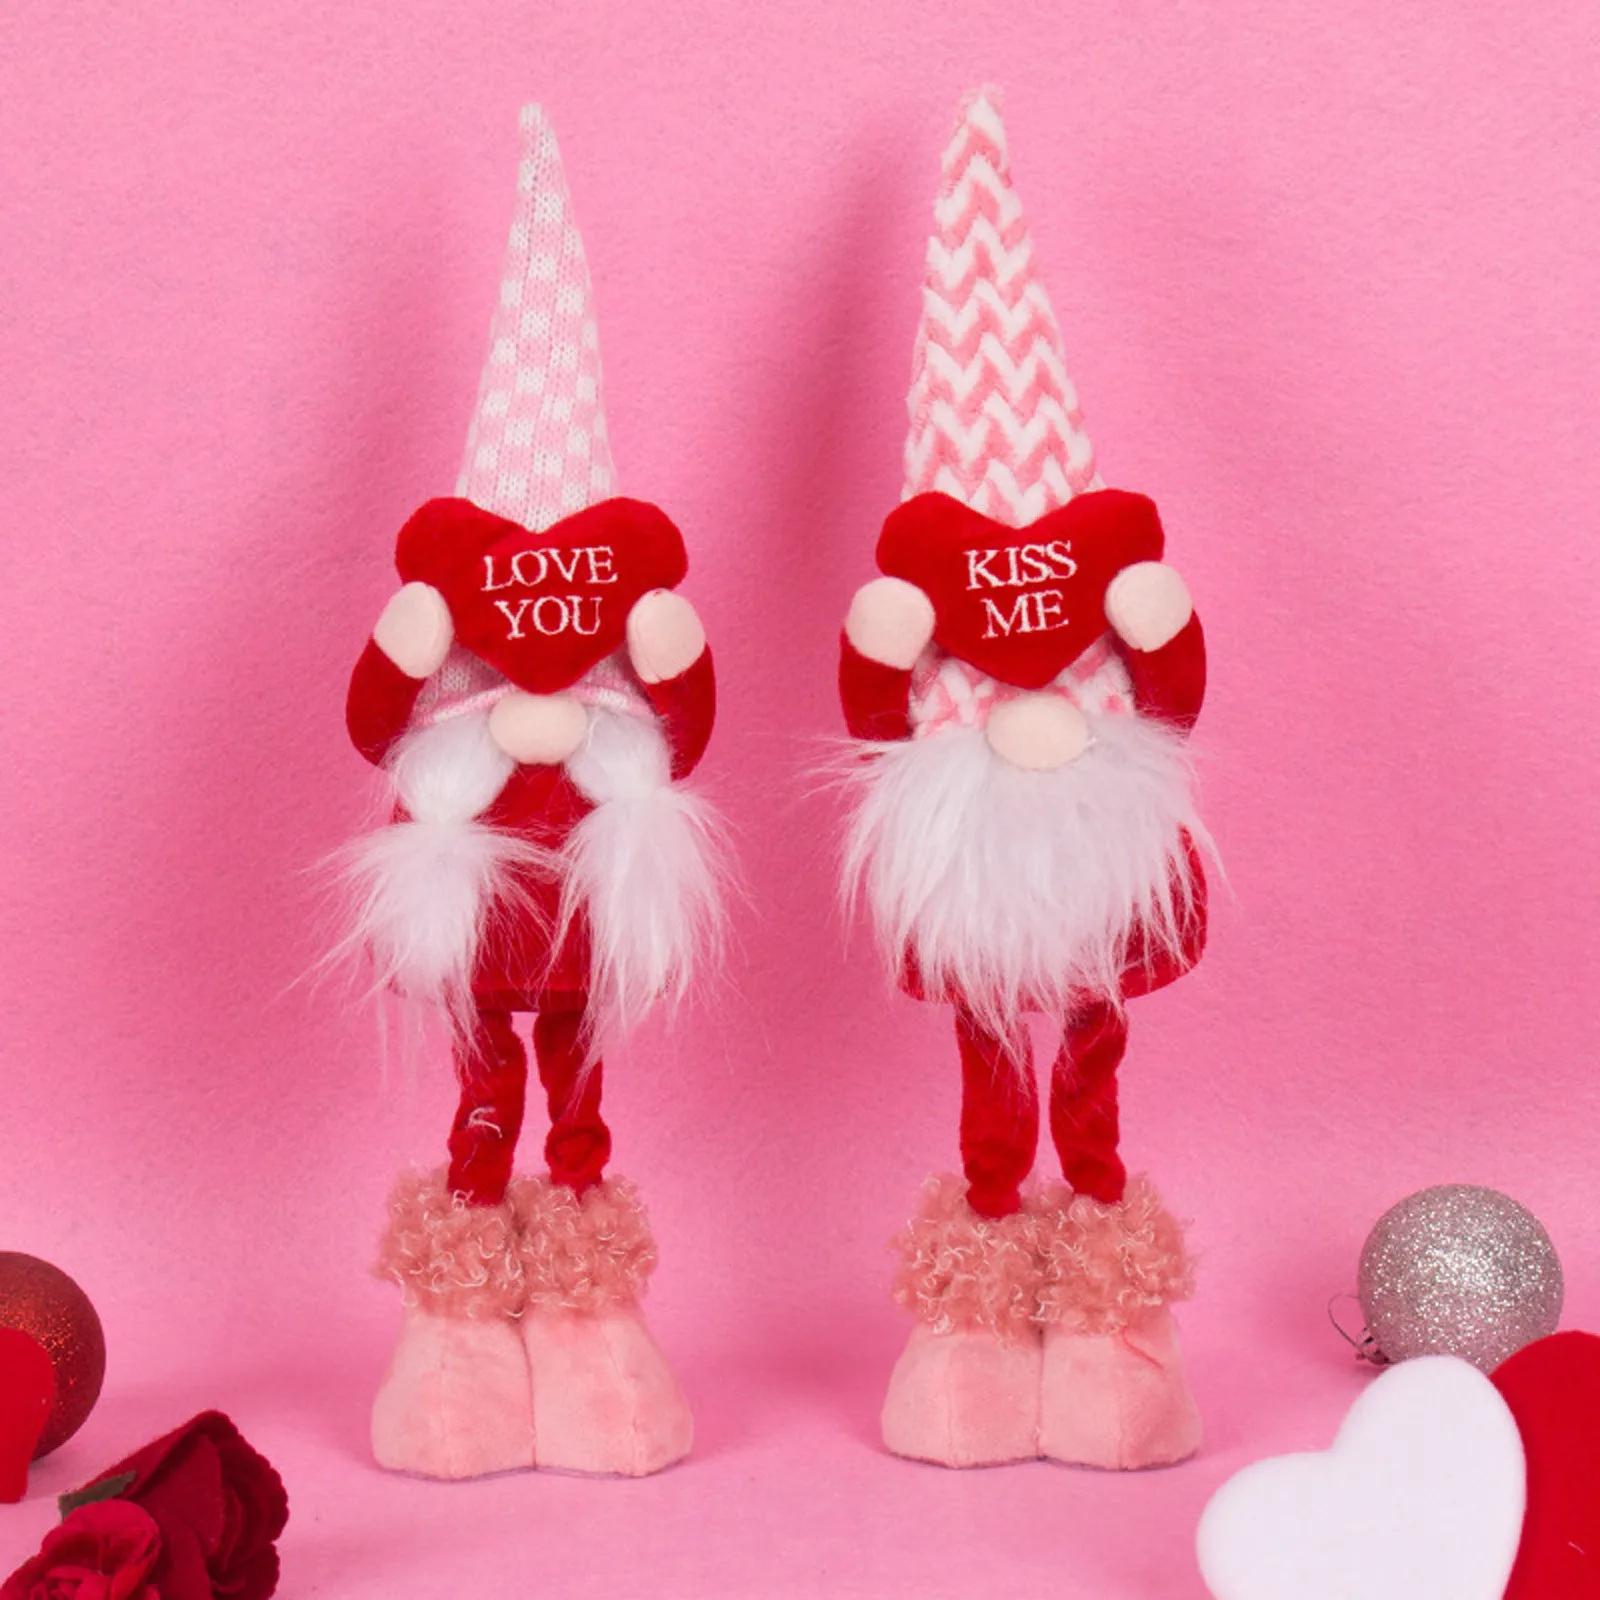 

День Святого Валентина, гном, мистер и миссис скандинавский томте, плюшевые куклы-эльфы, украшения, шведские карликовые фигурки Tomte